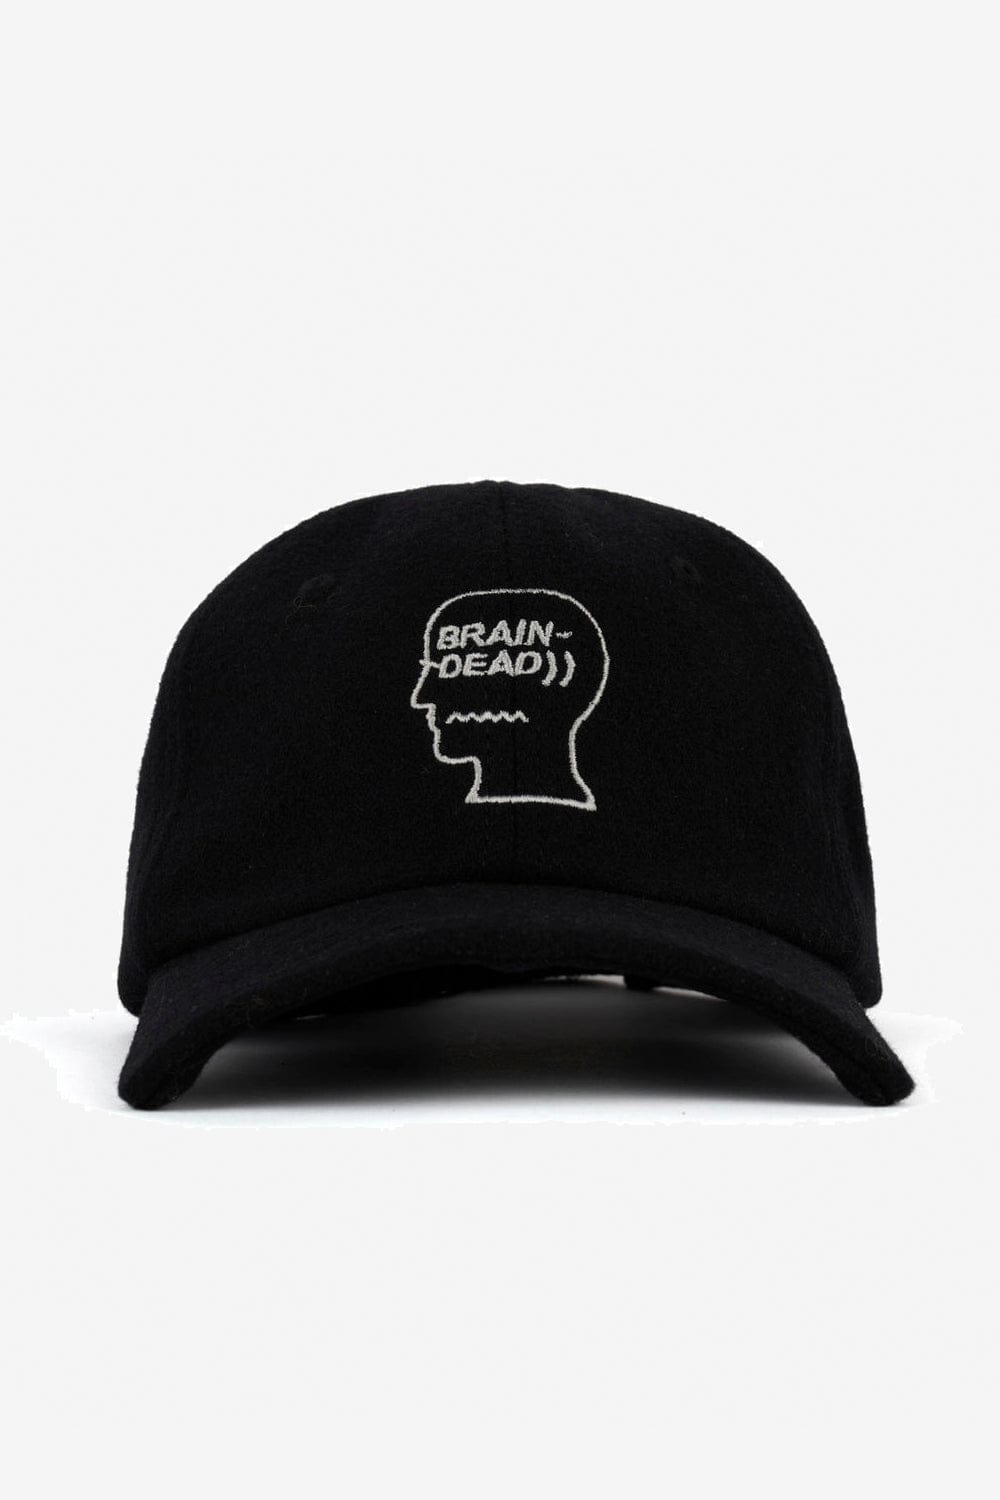 Brain Dead Batwing Logohead Hat (Black)